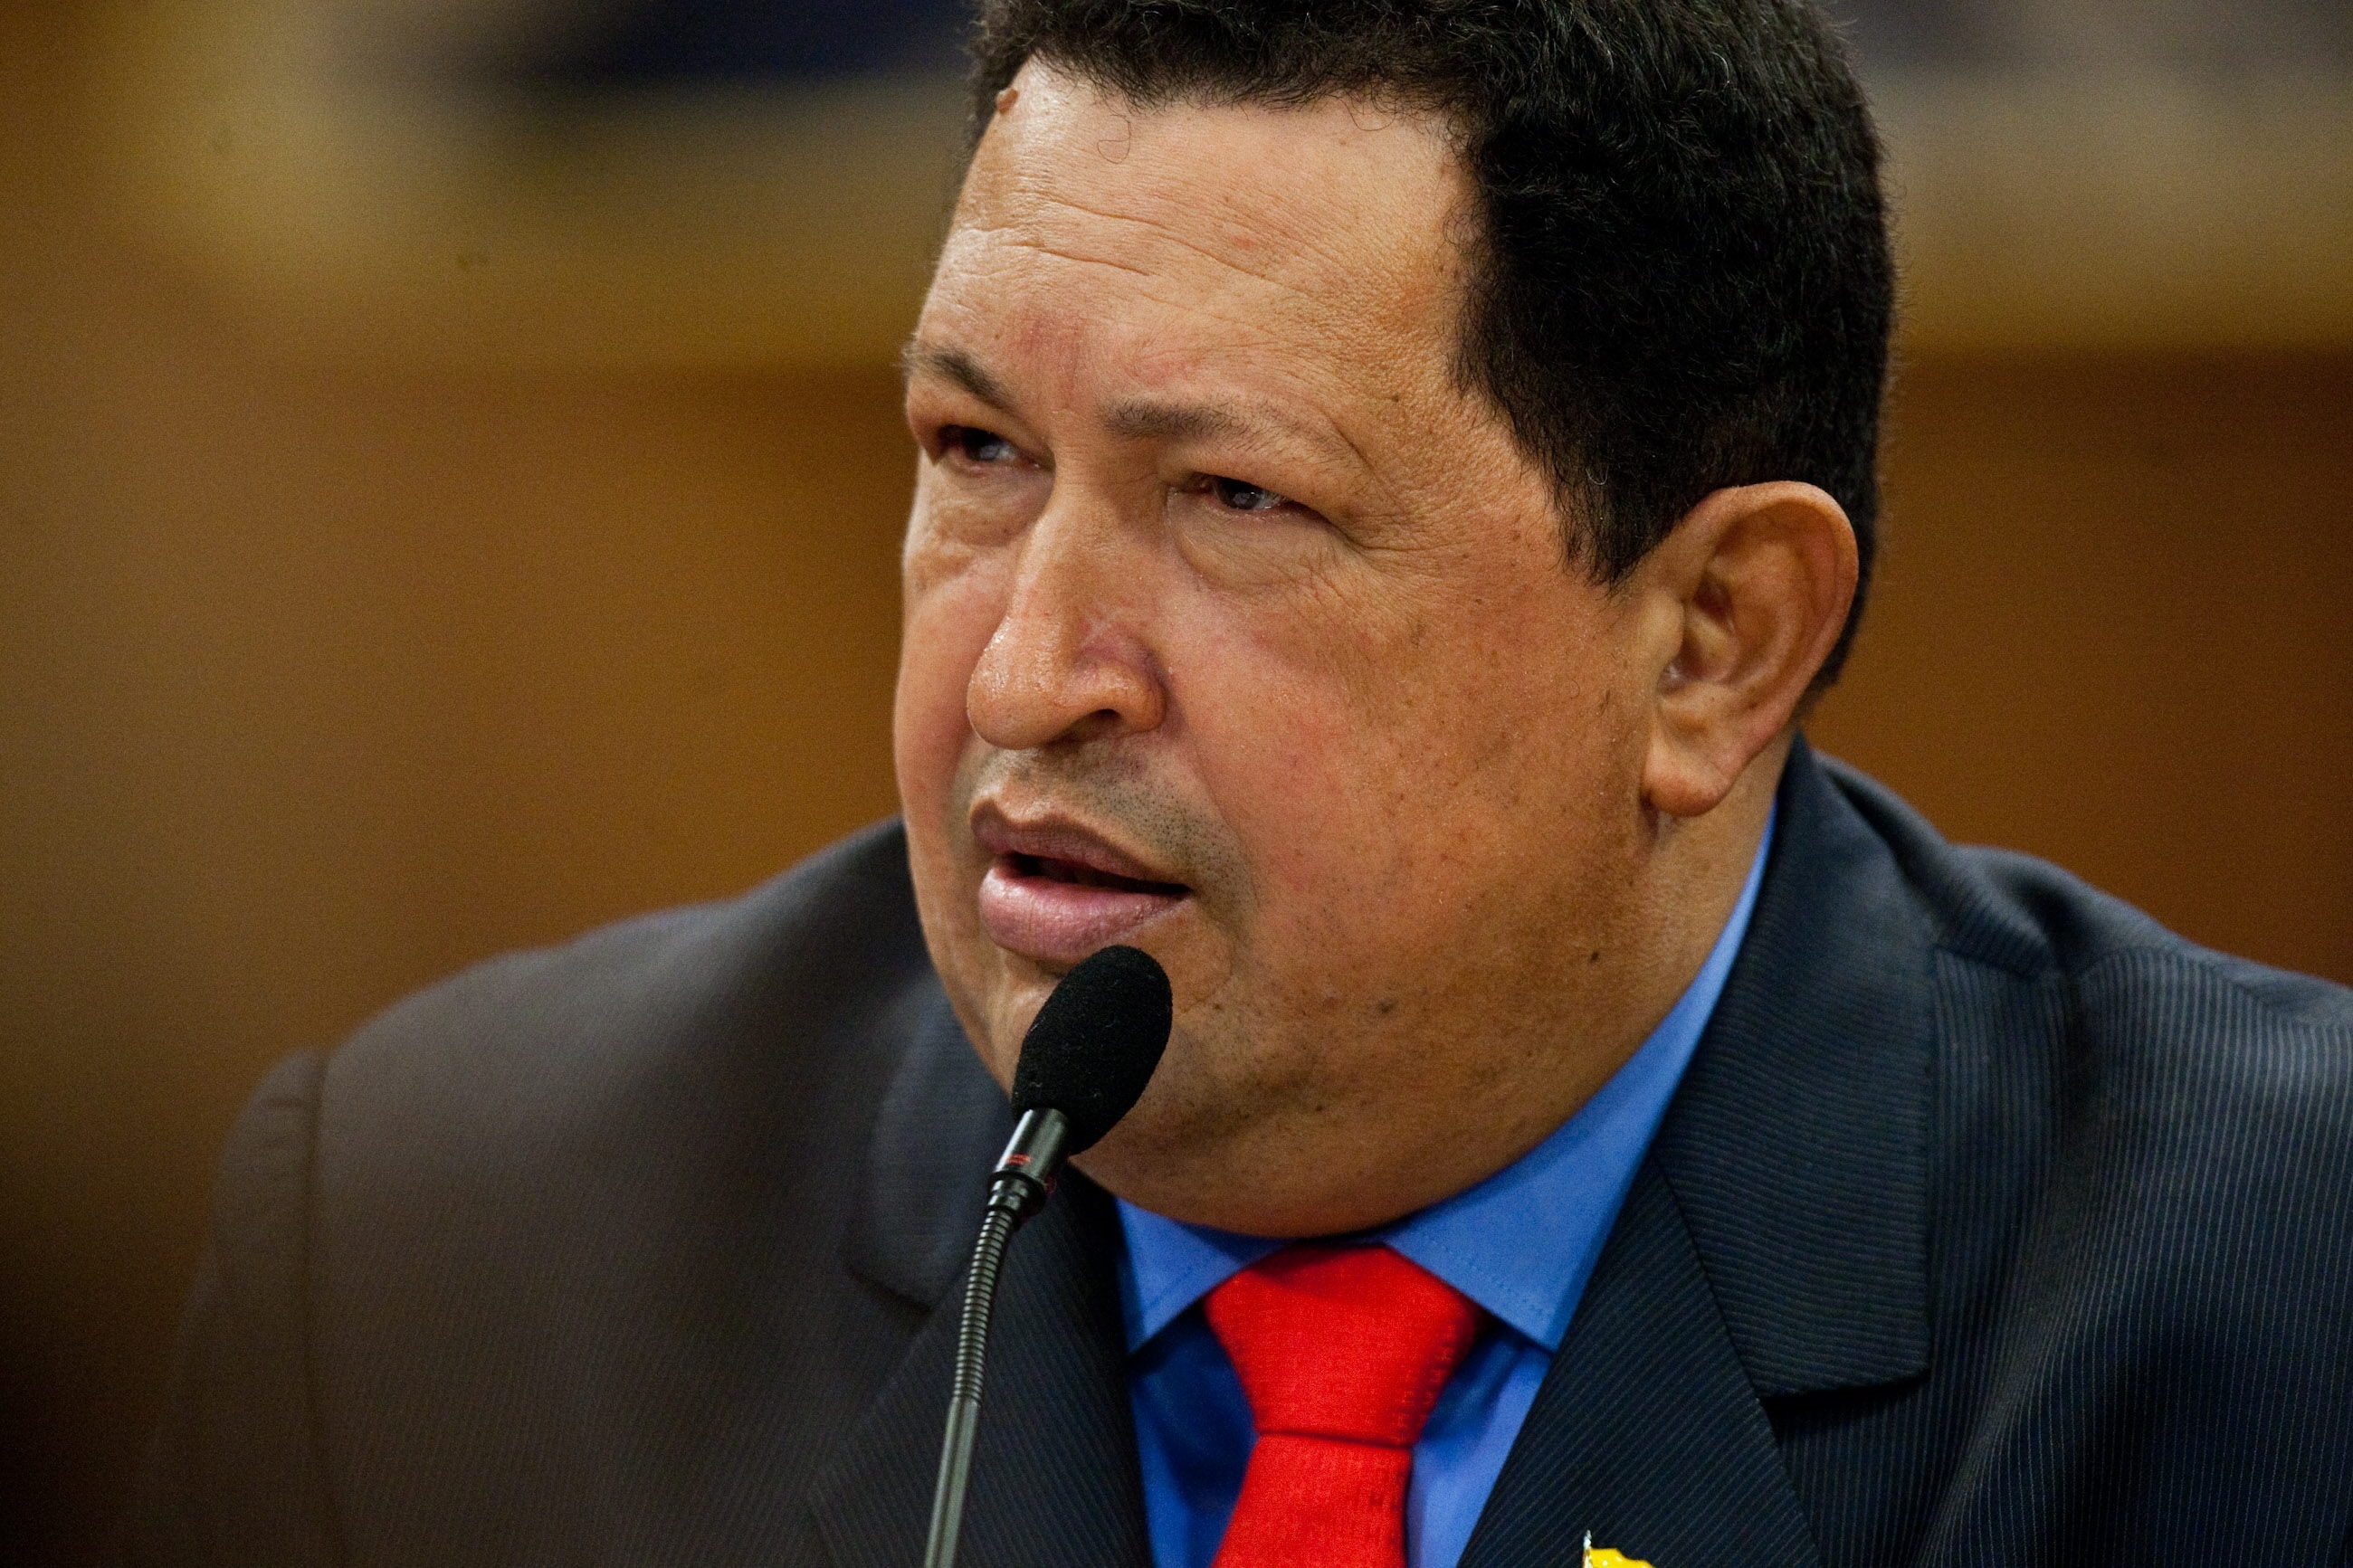 Provea defendió a todo tipo de víctimas, entre ellas, Hugo Chavez durante sus años en prisión -1993-1994- a fin de constatar su situación (EFE)